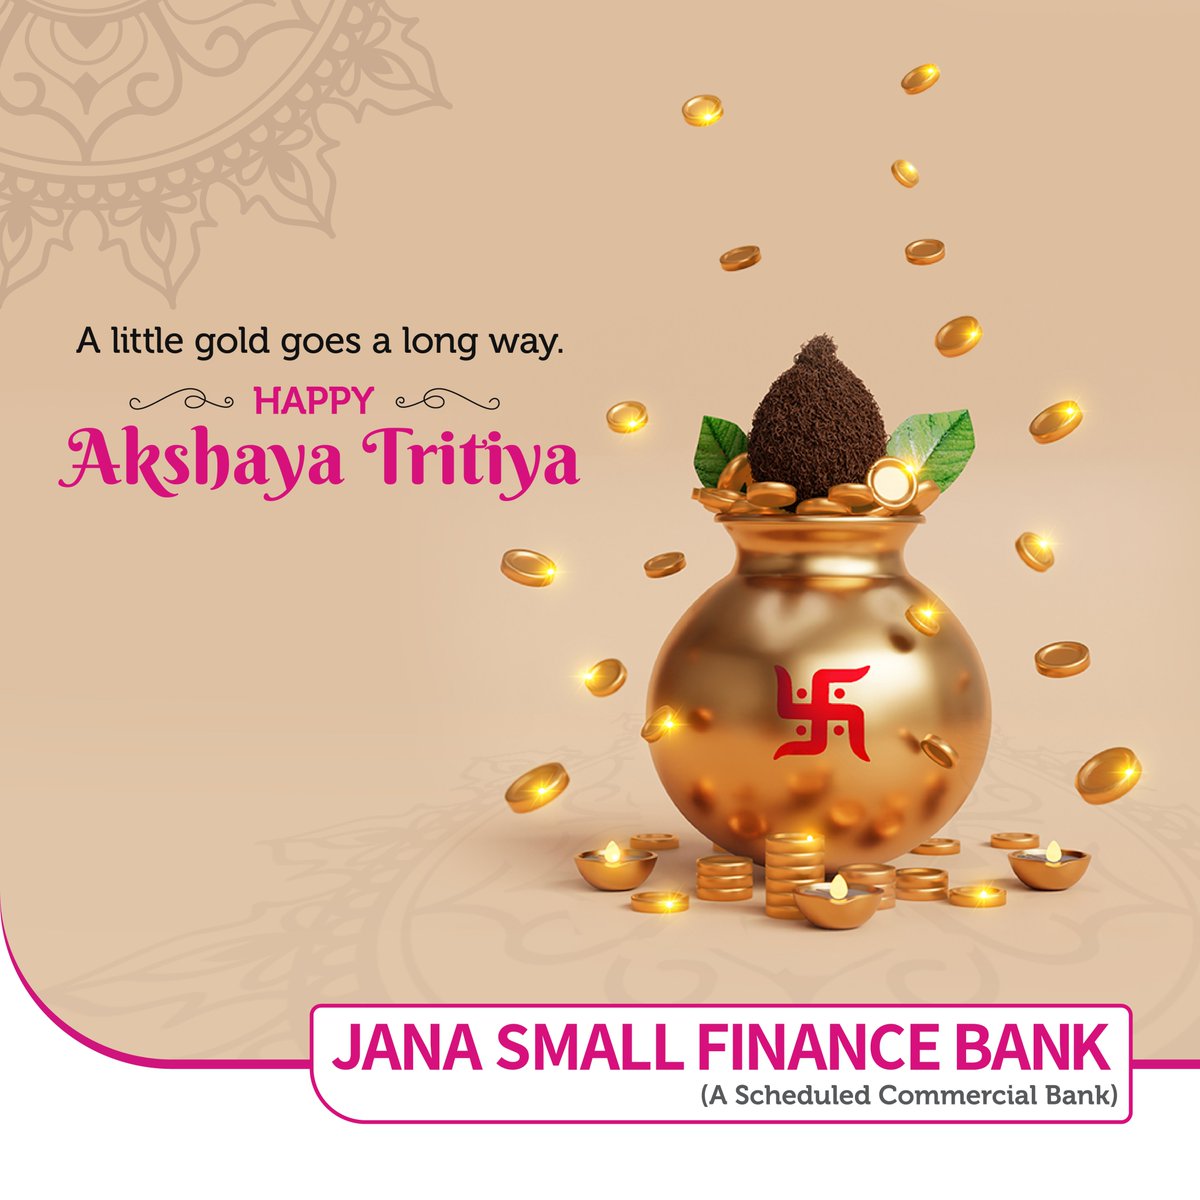 This Akshaya Tritiya, invest the right way for a better tomorrow.

#janasmallfinancebank #akshayatritiya #festive